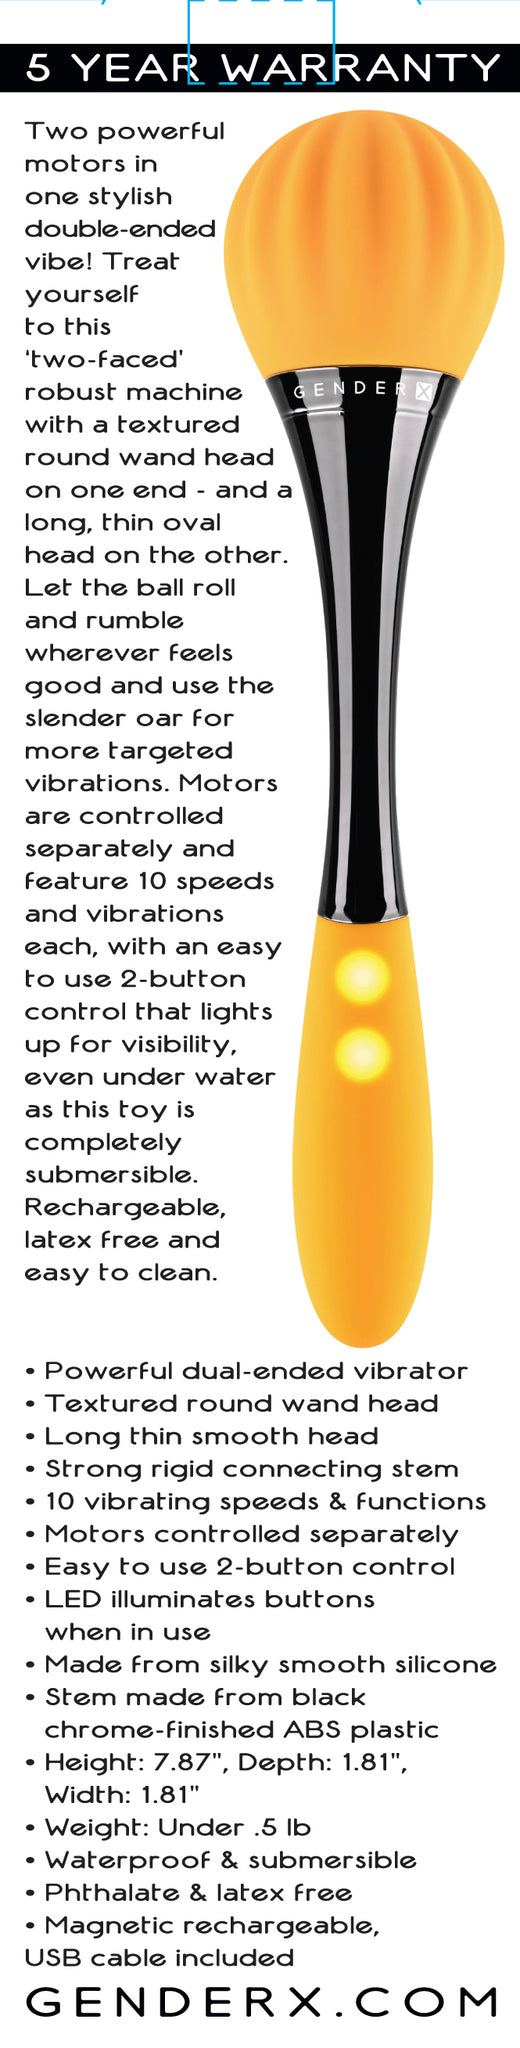 Evolved Novelties Gender X Sunflower Double Vibrator at $59.99